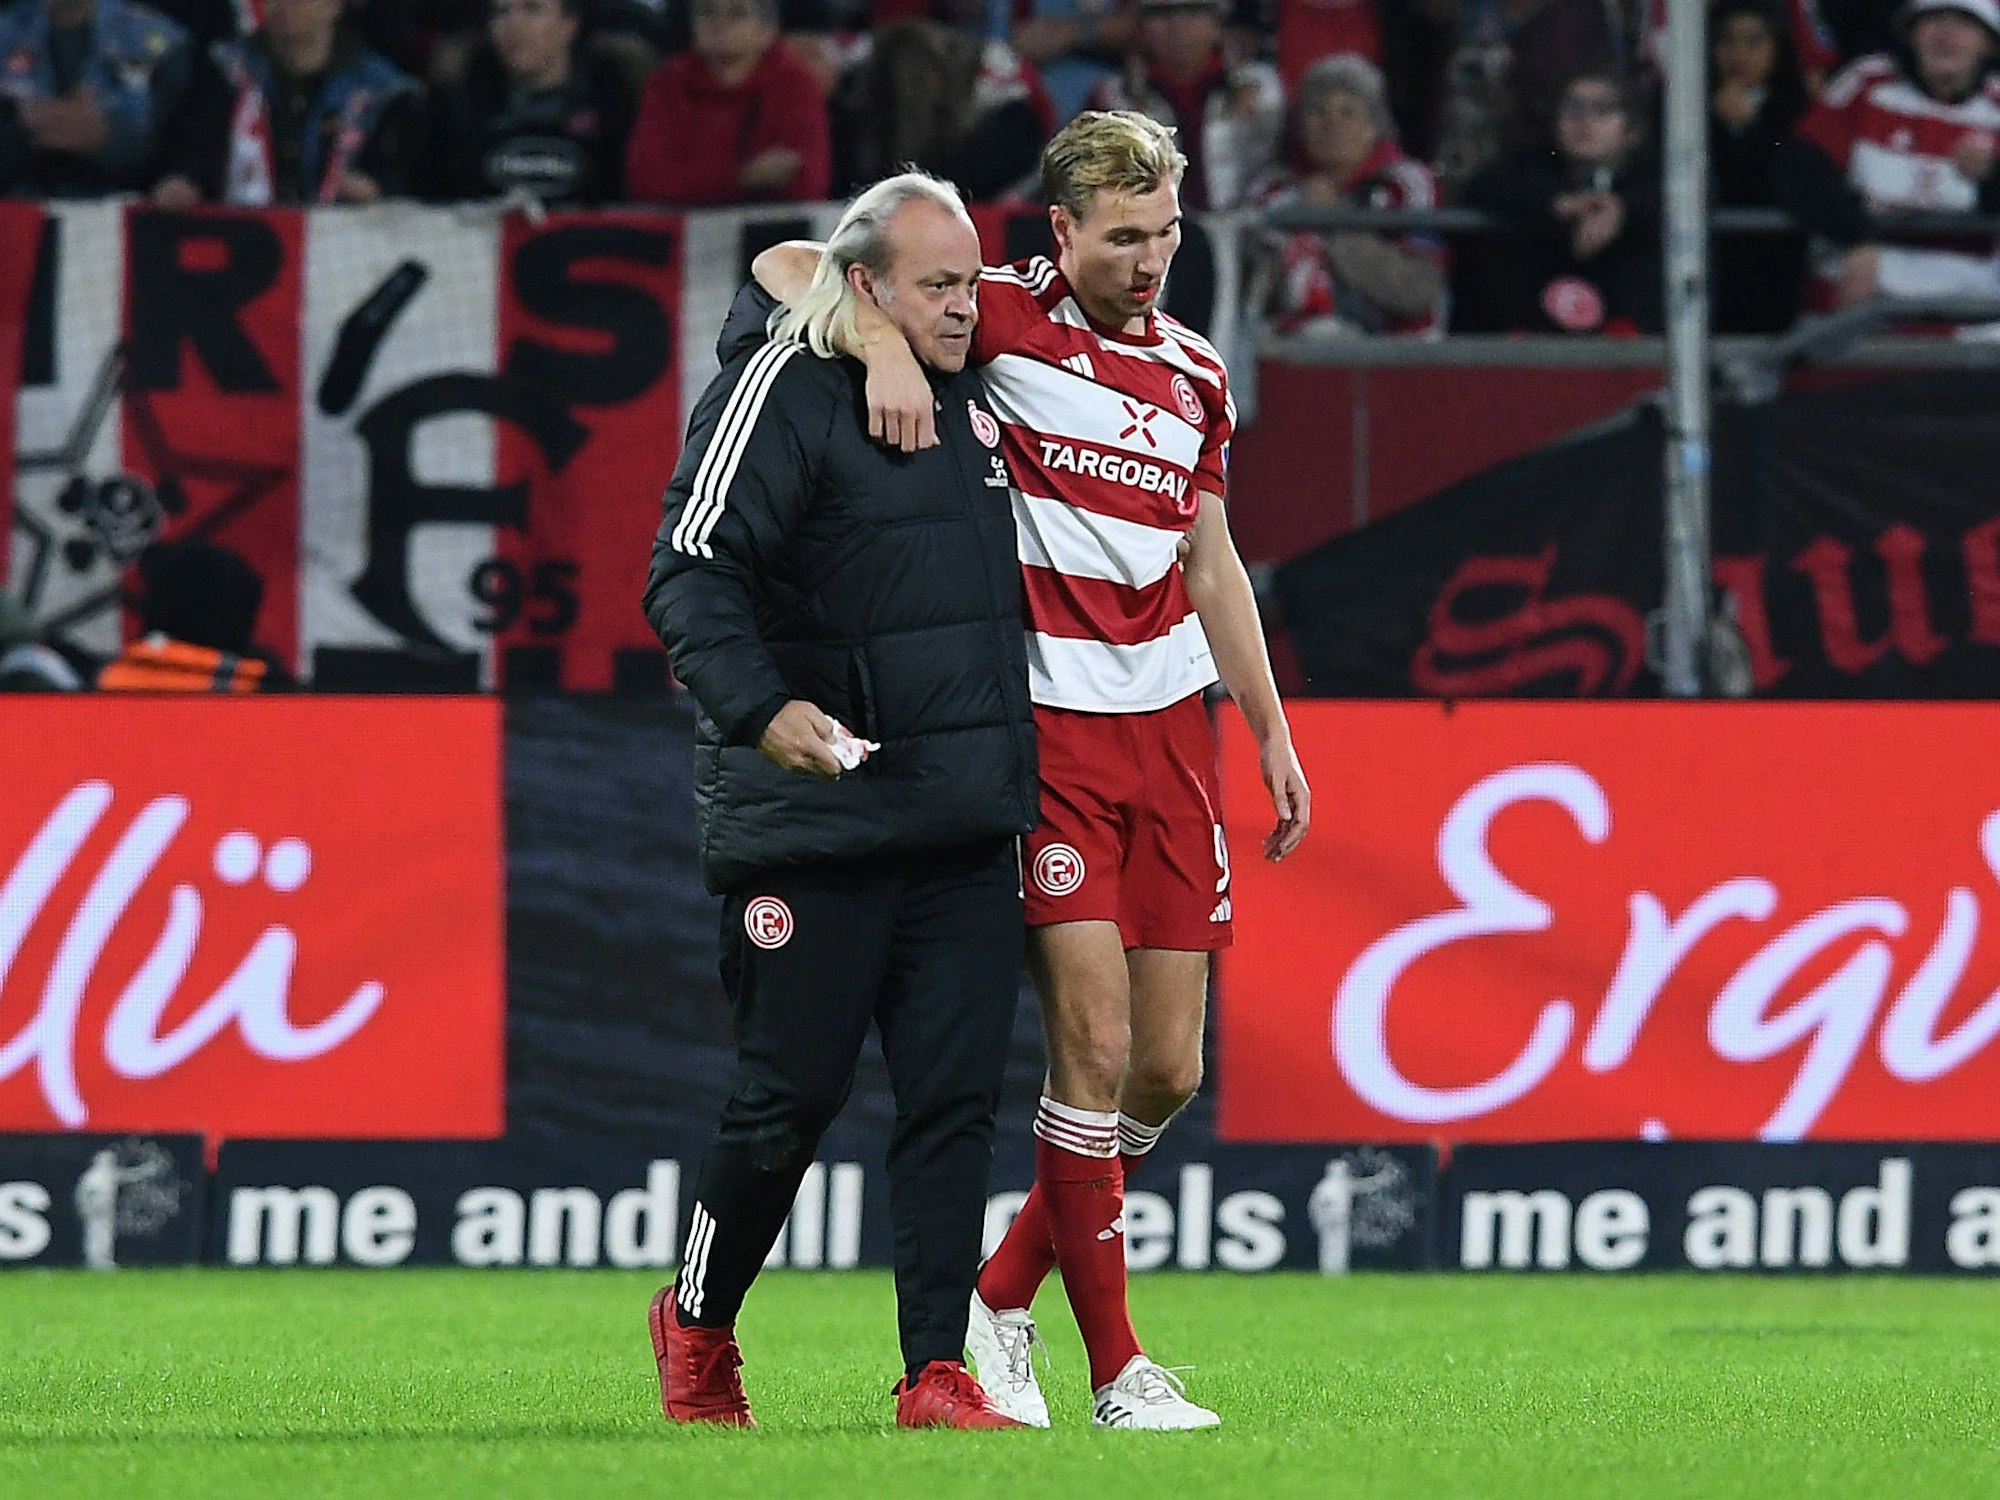 Fortuna Düsseldorfs Stürmer Vincent Vermeij verlässt gestützt von Team-Arzt Ulf Blecker beim Spiel gegen Wehen Wiesbaden den Platz.